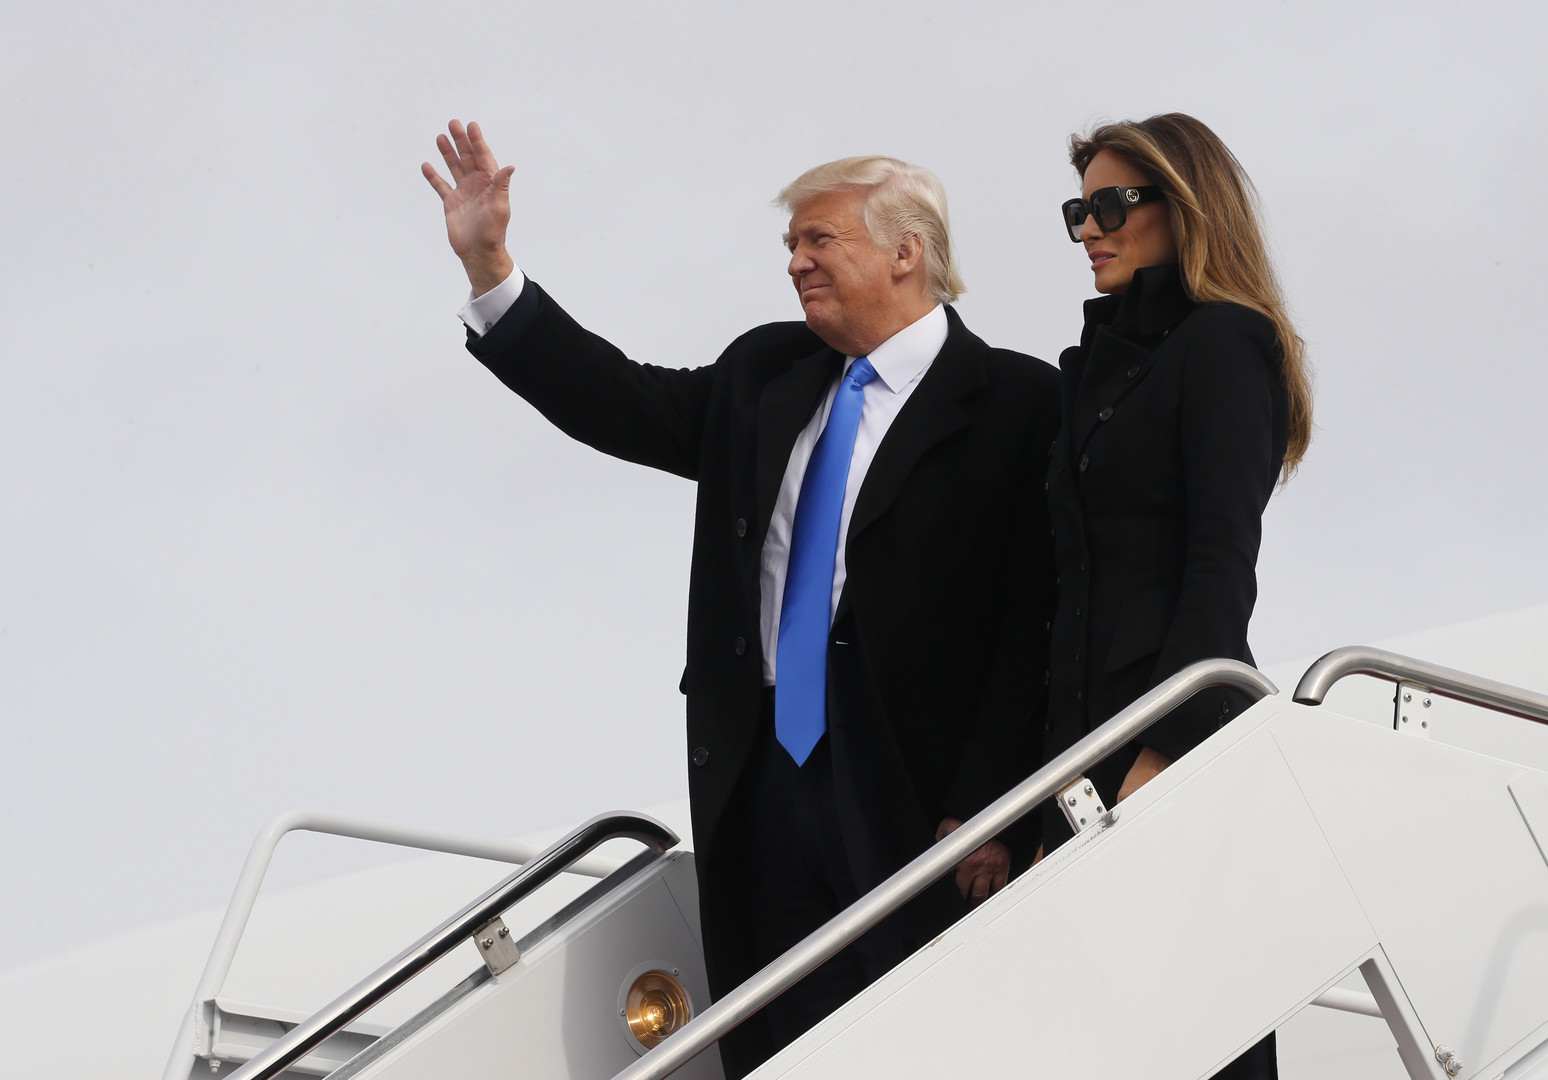 الرئيس المنتخب دونالد ترامب، ترافقه زوجته ميلانيا ترامب، يصلون إلى قاعدة اندروز الجوية - الخميس 19/كانون الثاني/2017